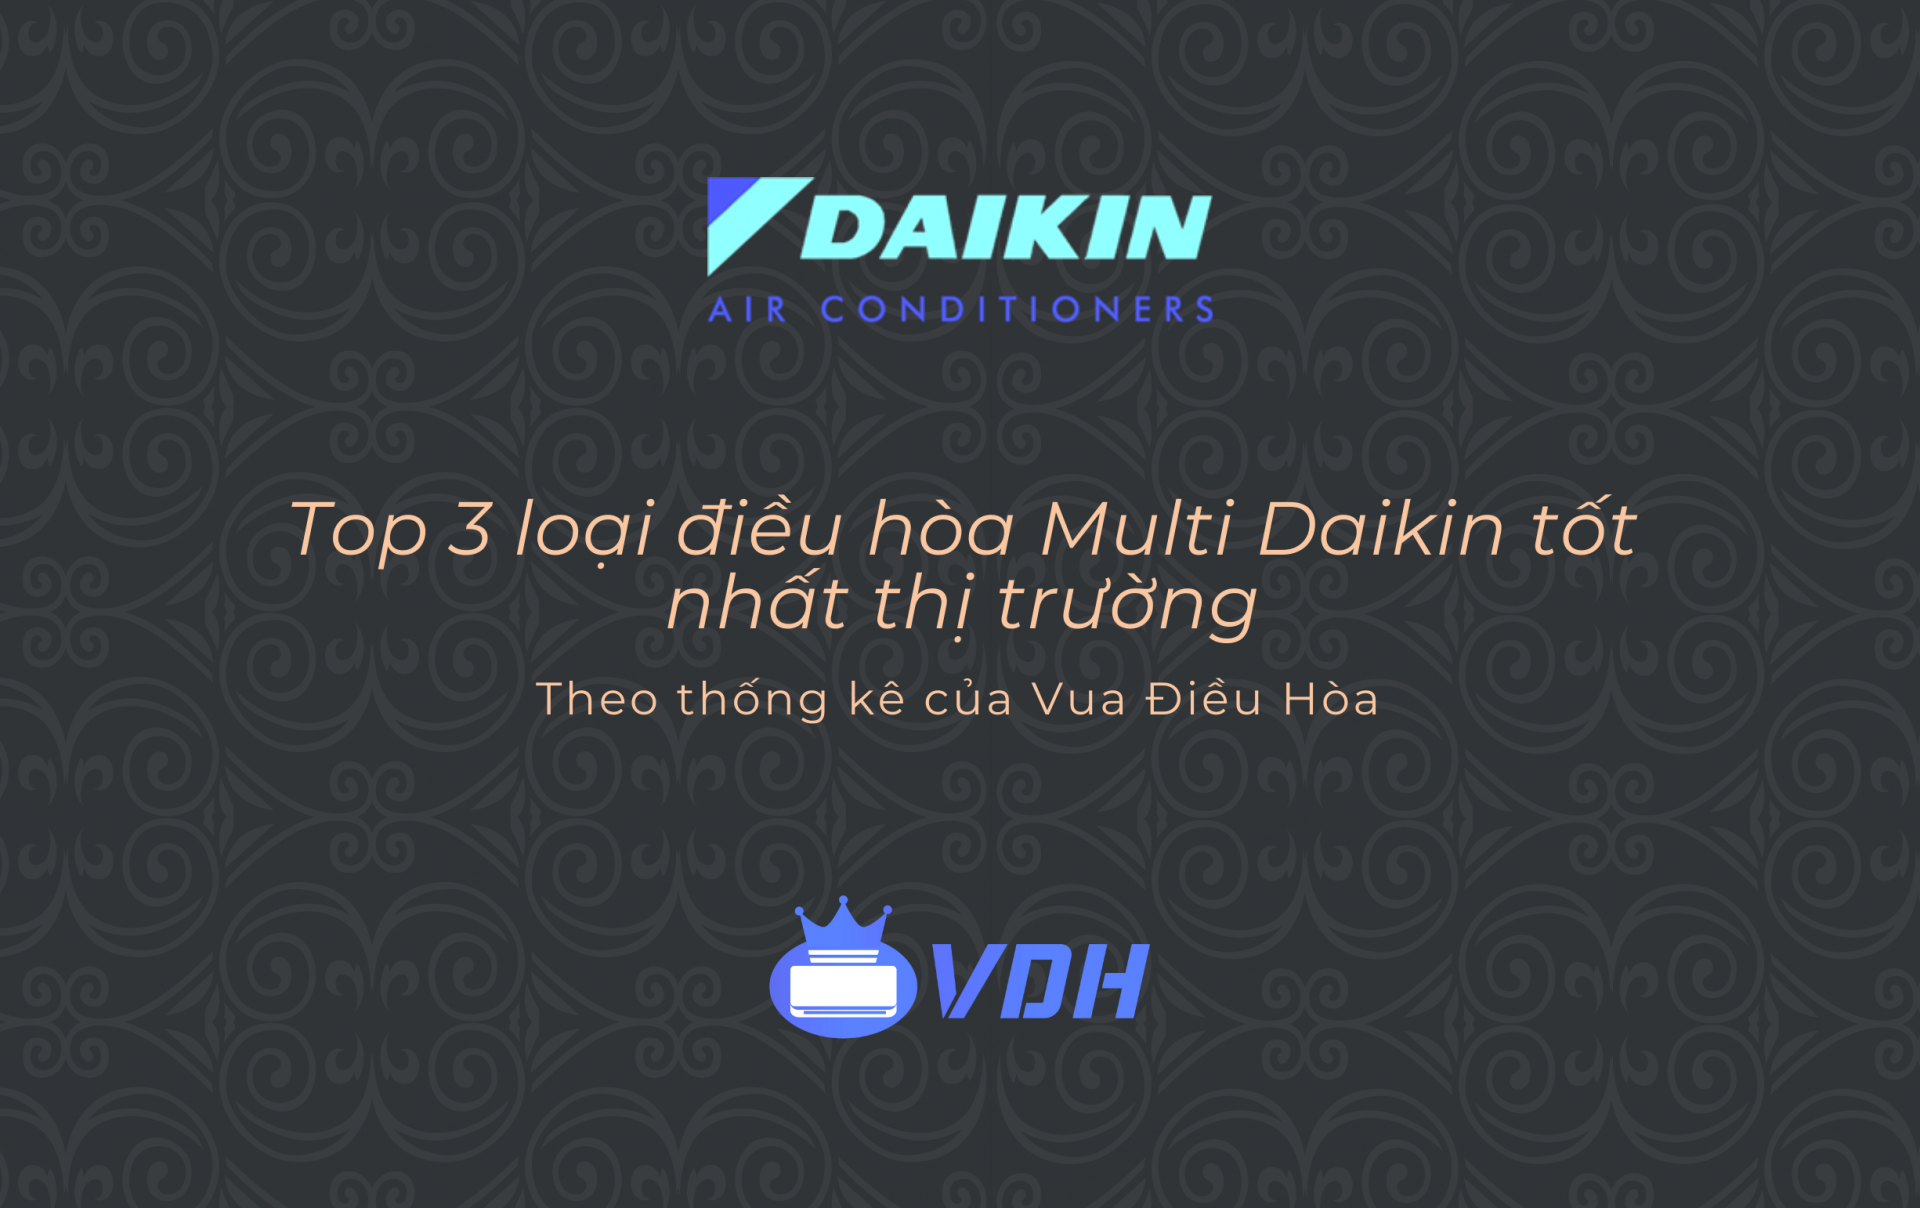 Top 3 loại điều hòa Multi Daikin tốt nhất thị trường